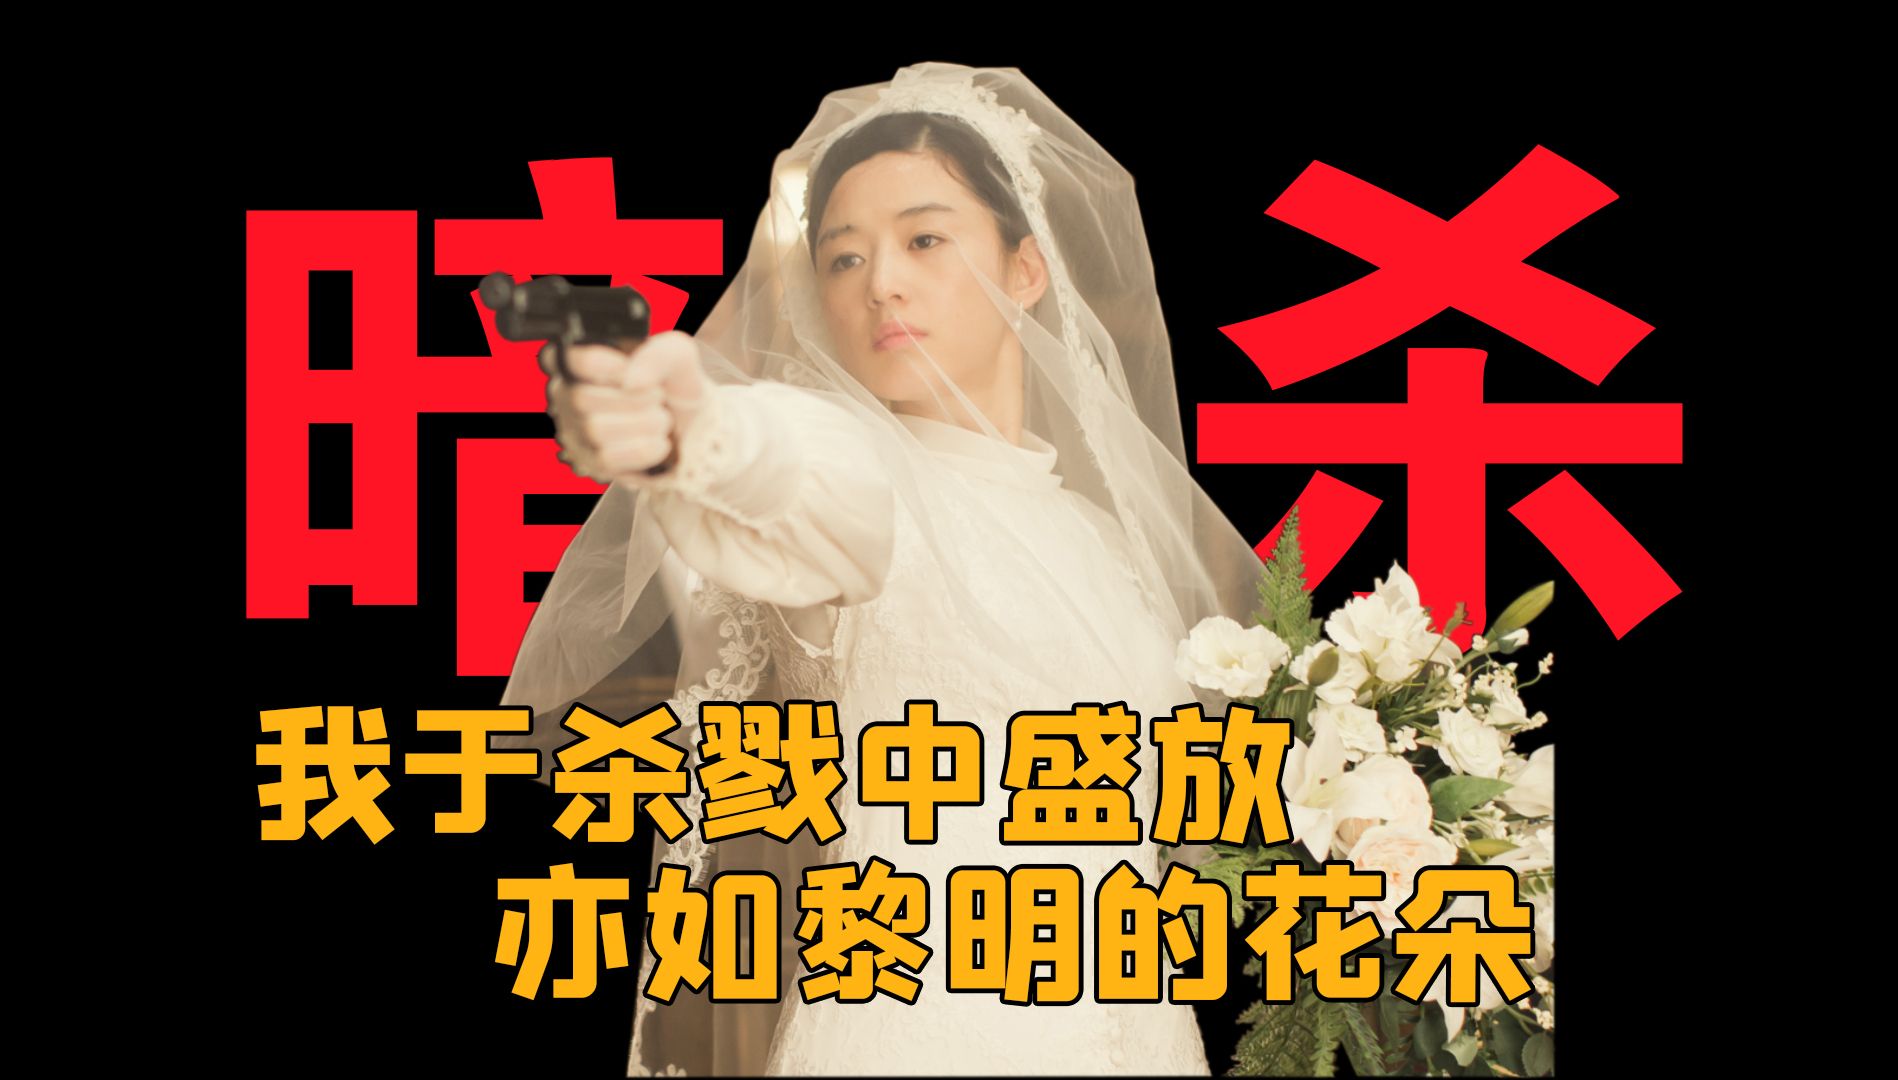 【李政宰第1期】国内票房冠军《暗杀》,最成功的韩国商业主旋律电影。